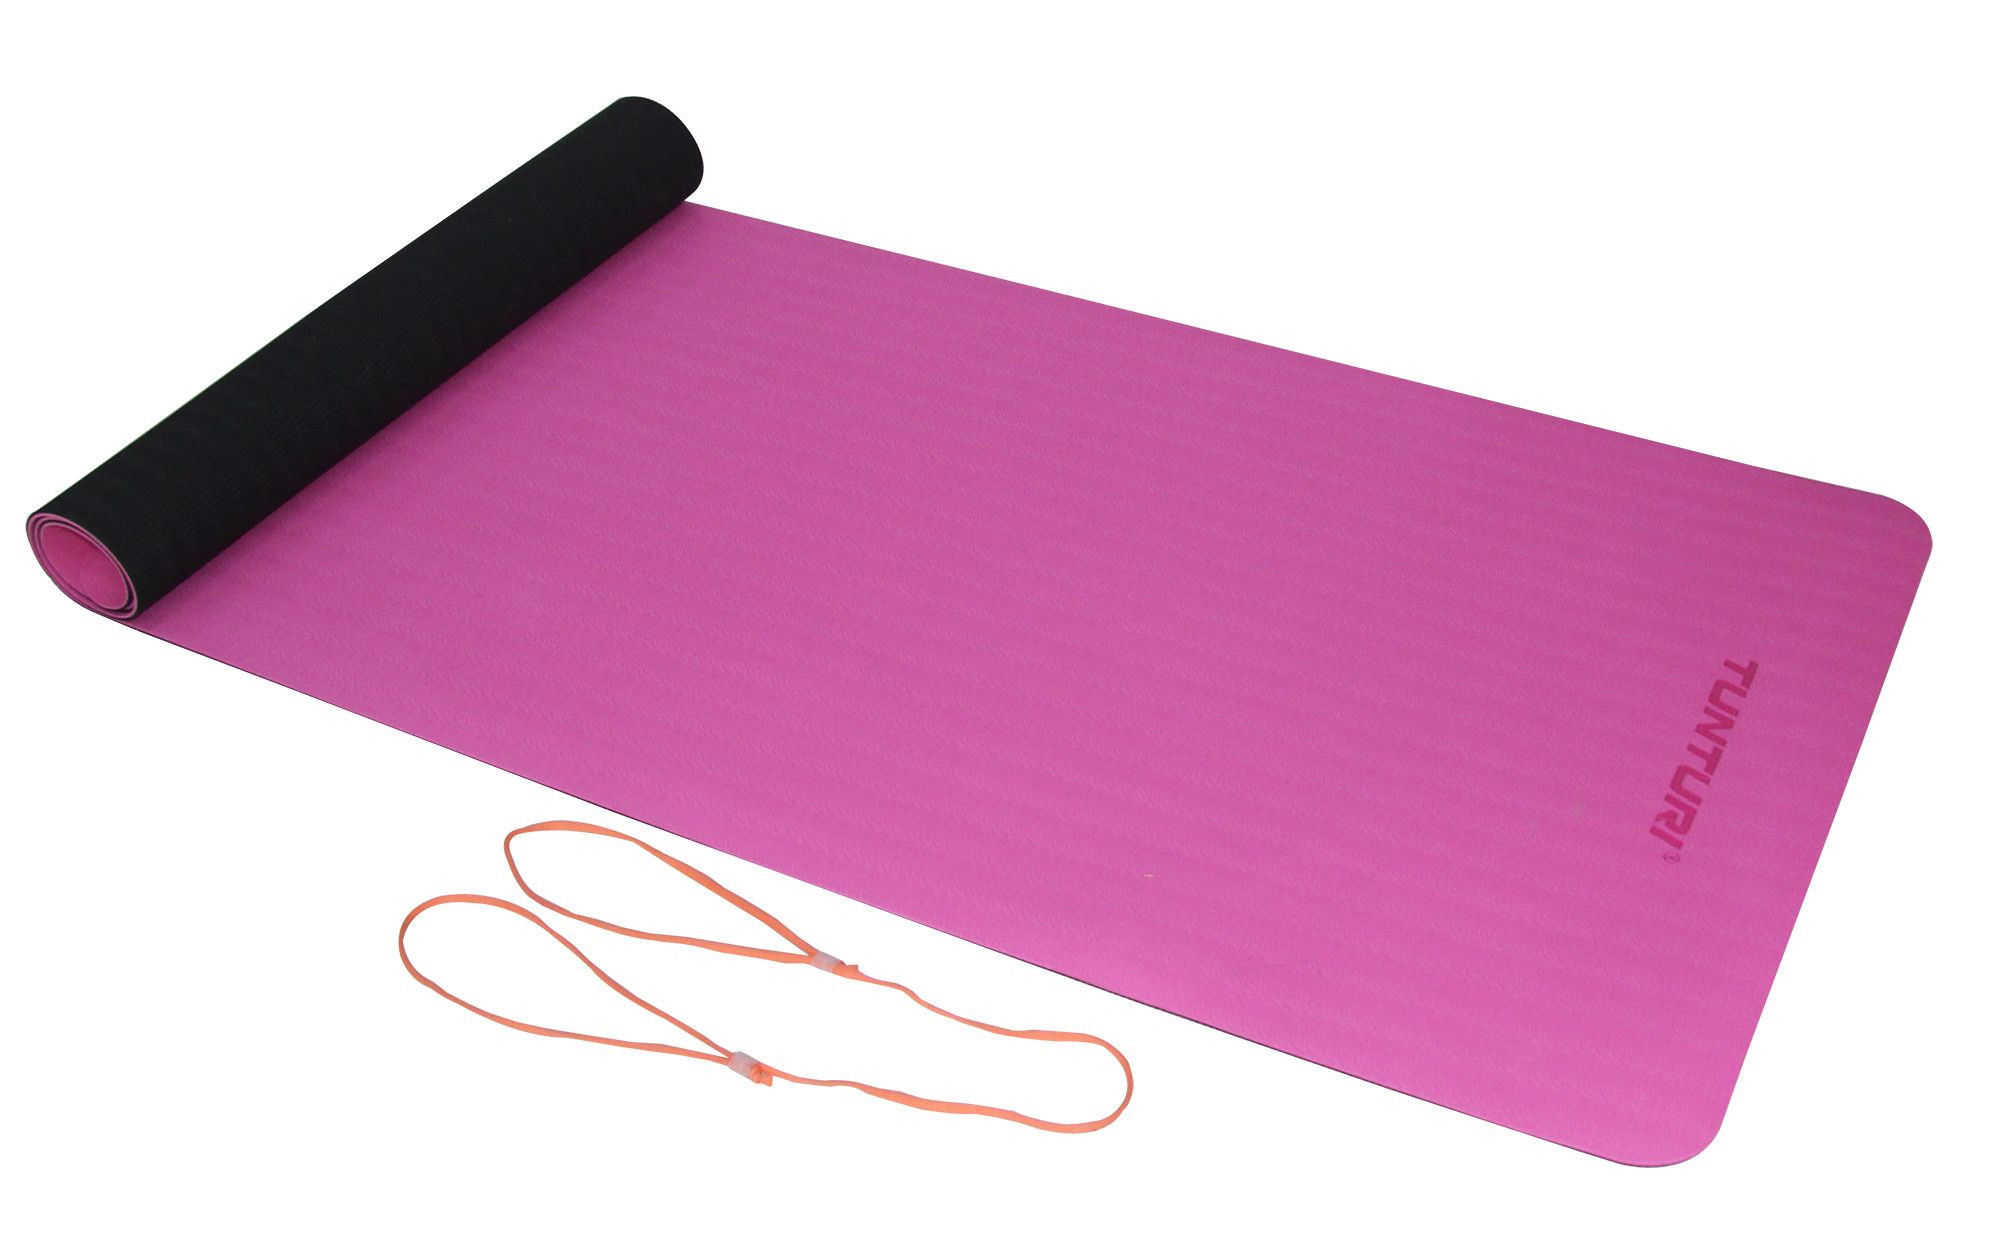 Voorkeur buis Deens Tunturi Tunturi TPE Yogamat 4mm Black/Pink, Orange cord | -  Vechtsportonline.nl